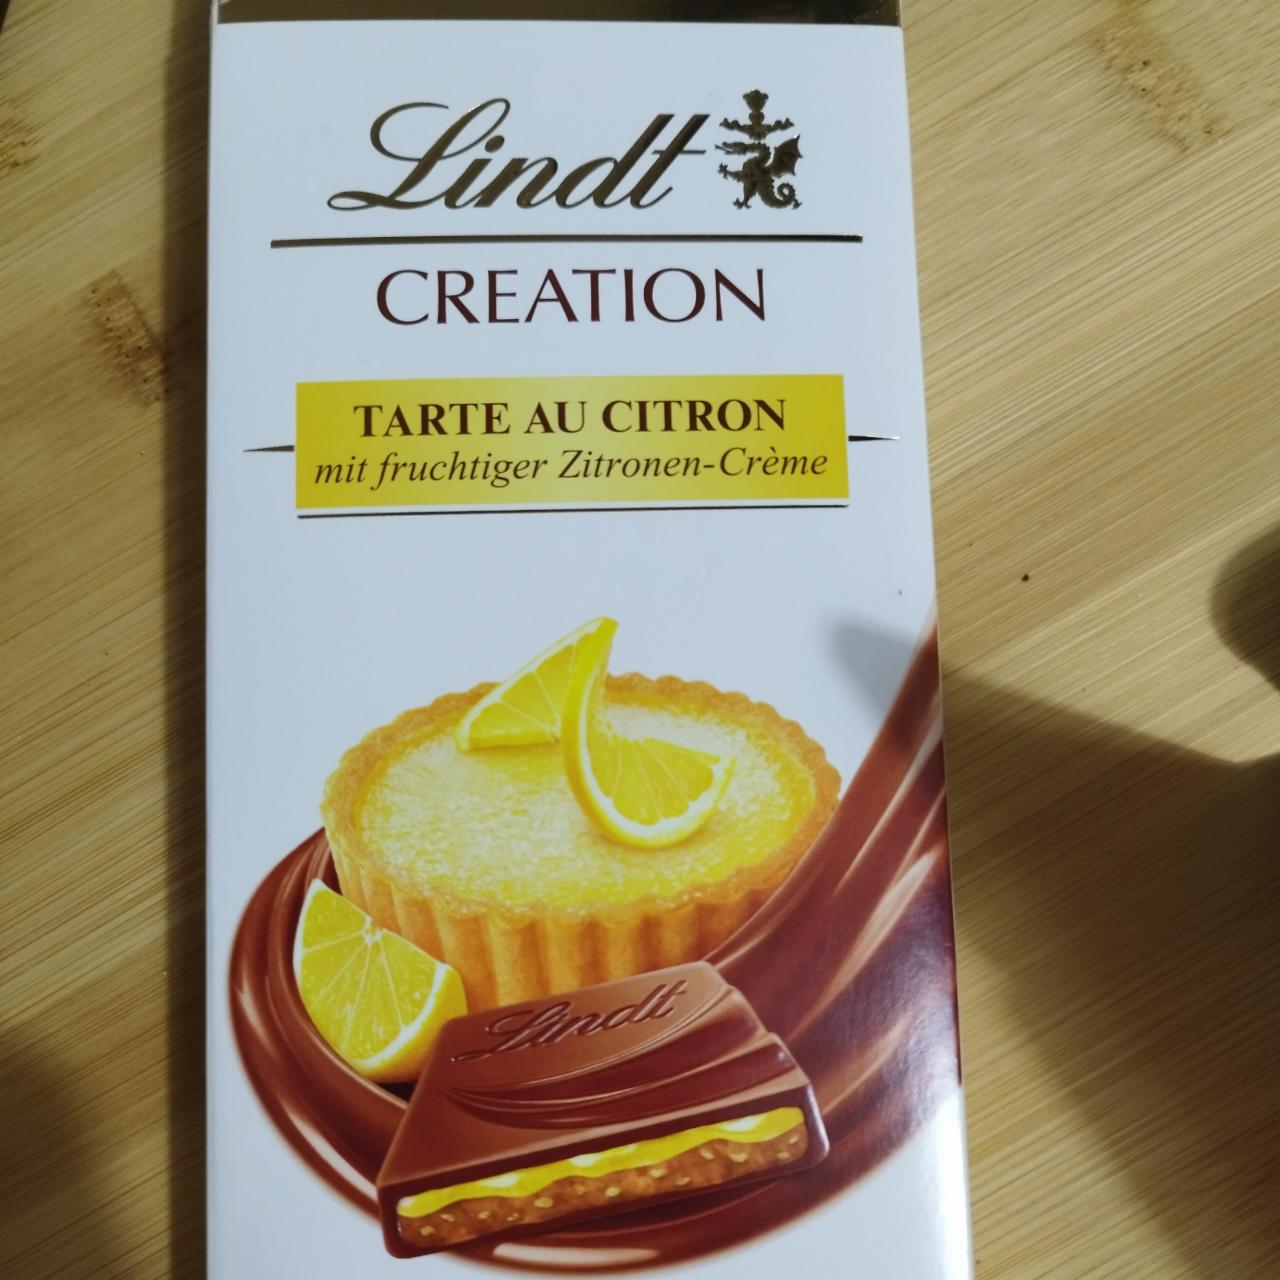 Fotografie - Creation Tarte au Citron Lindt